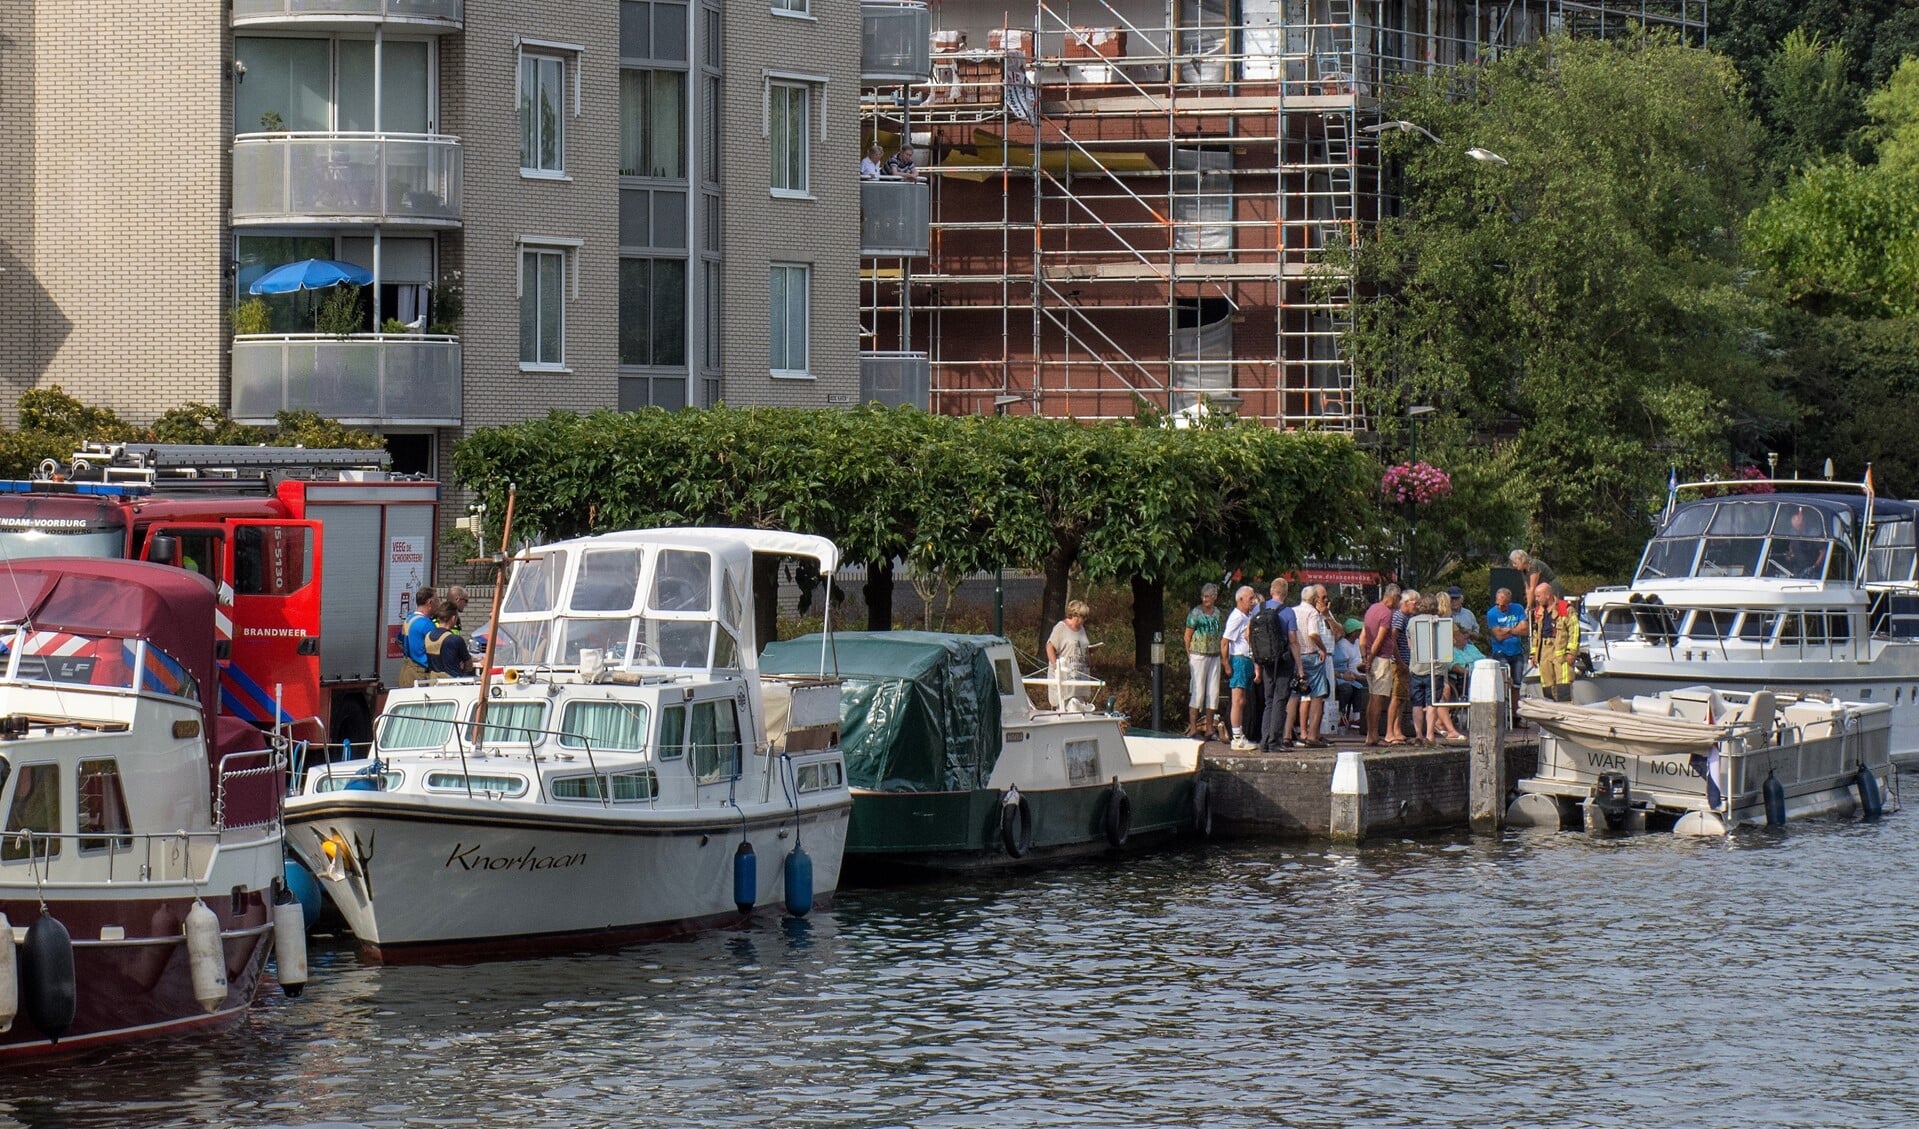 Het vaartuig dat dreigde te zinken werd afgemeerd in de Huygenshaven (foto: AS Media).